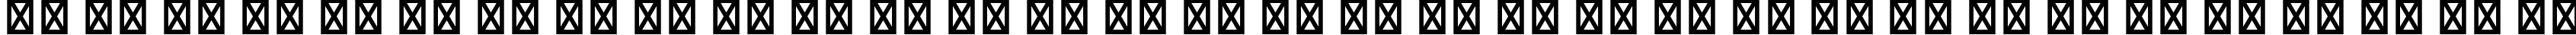 Пример написания русского алфавита шрифтом Bebas Kai